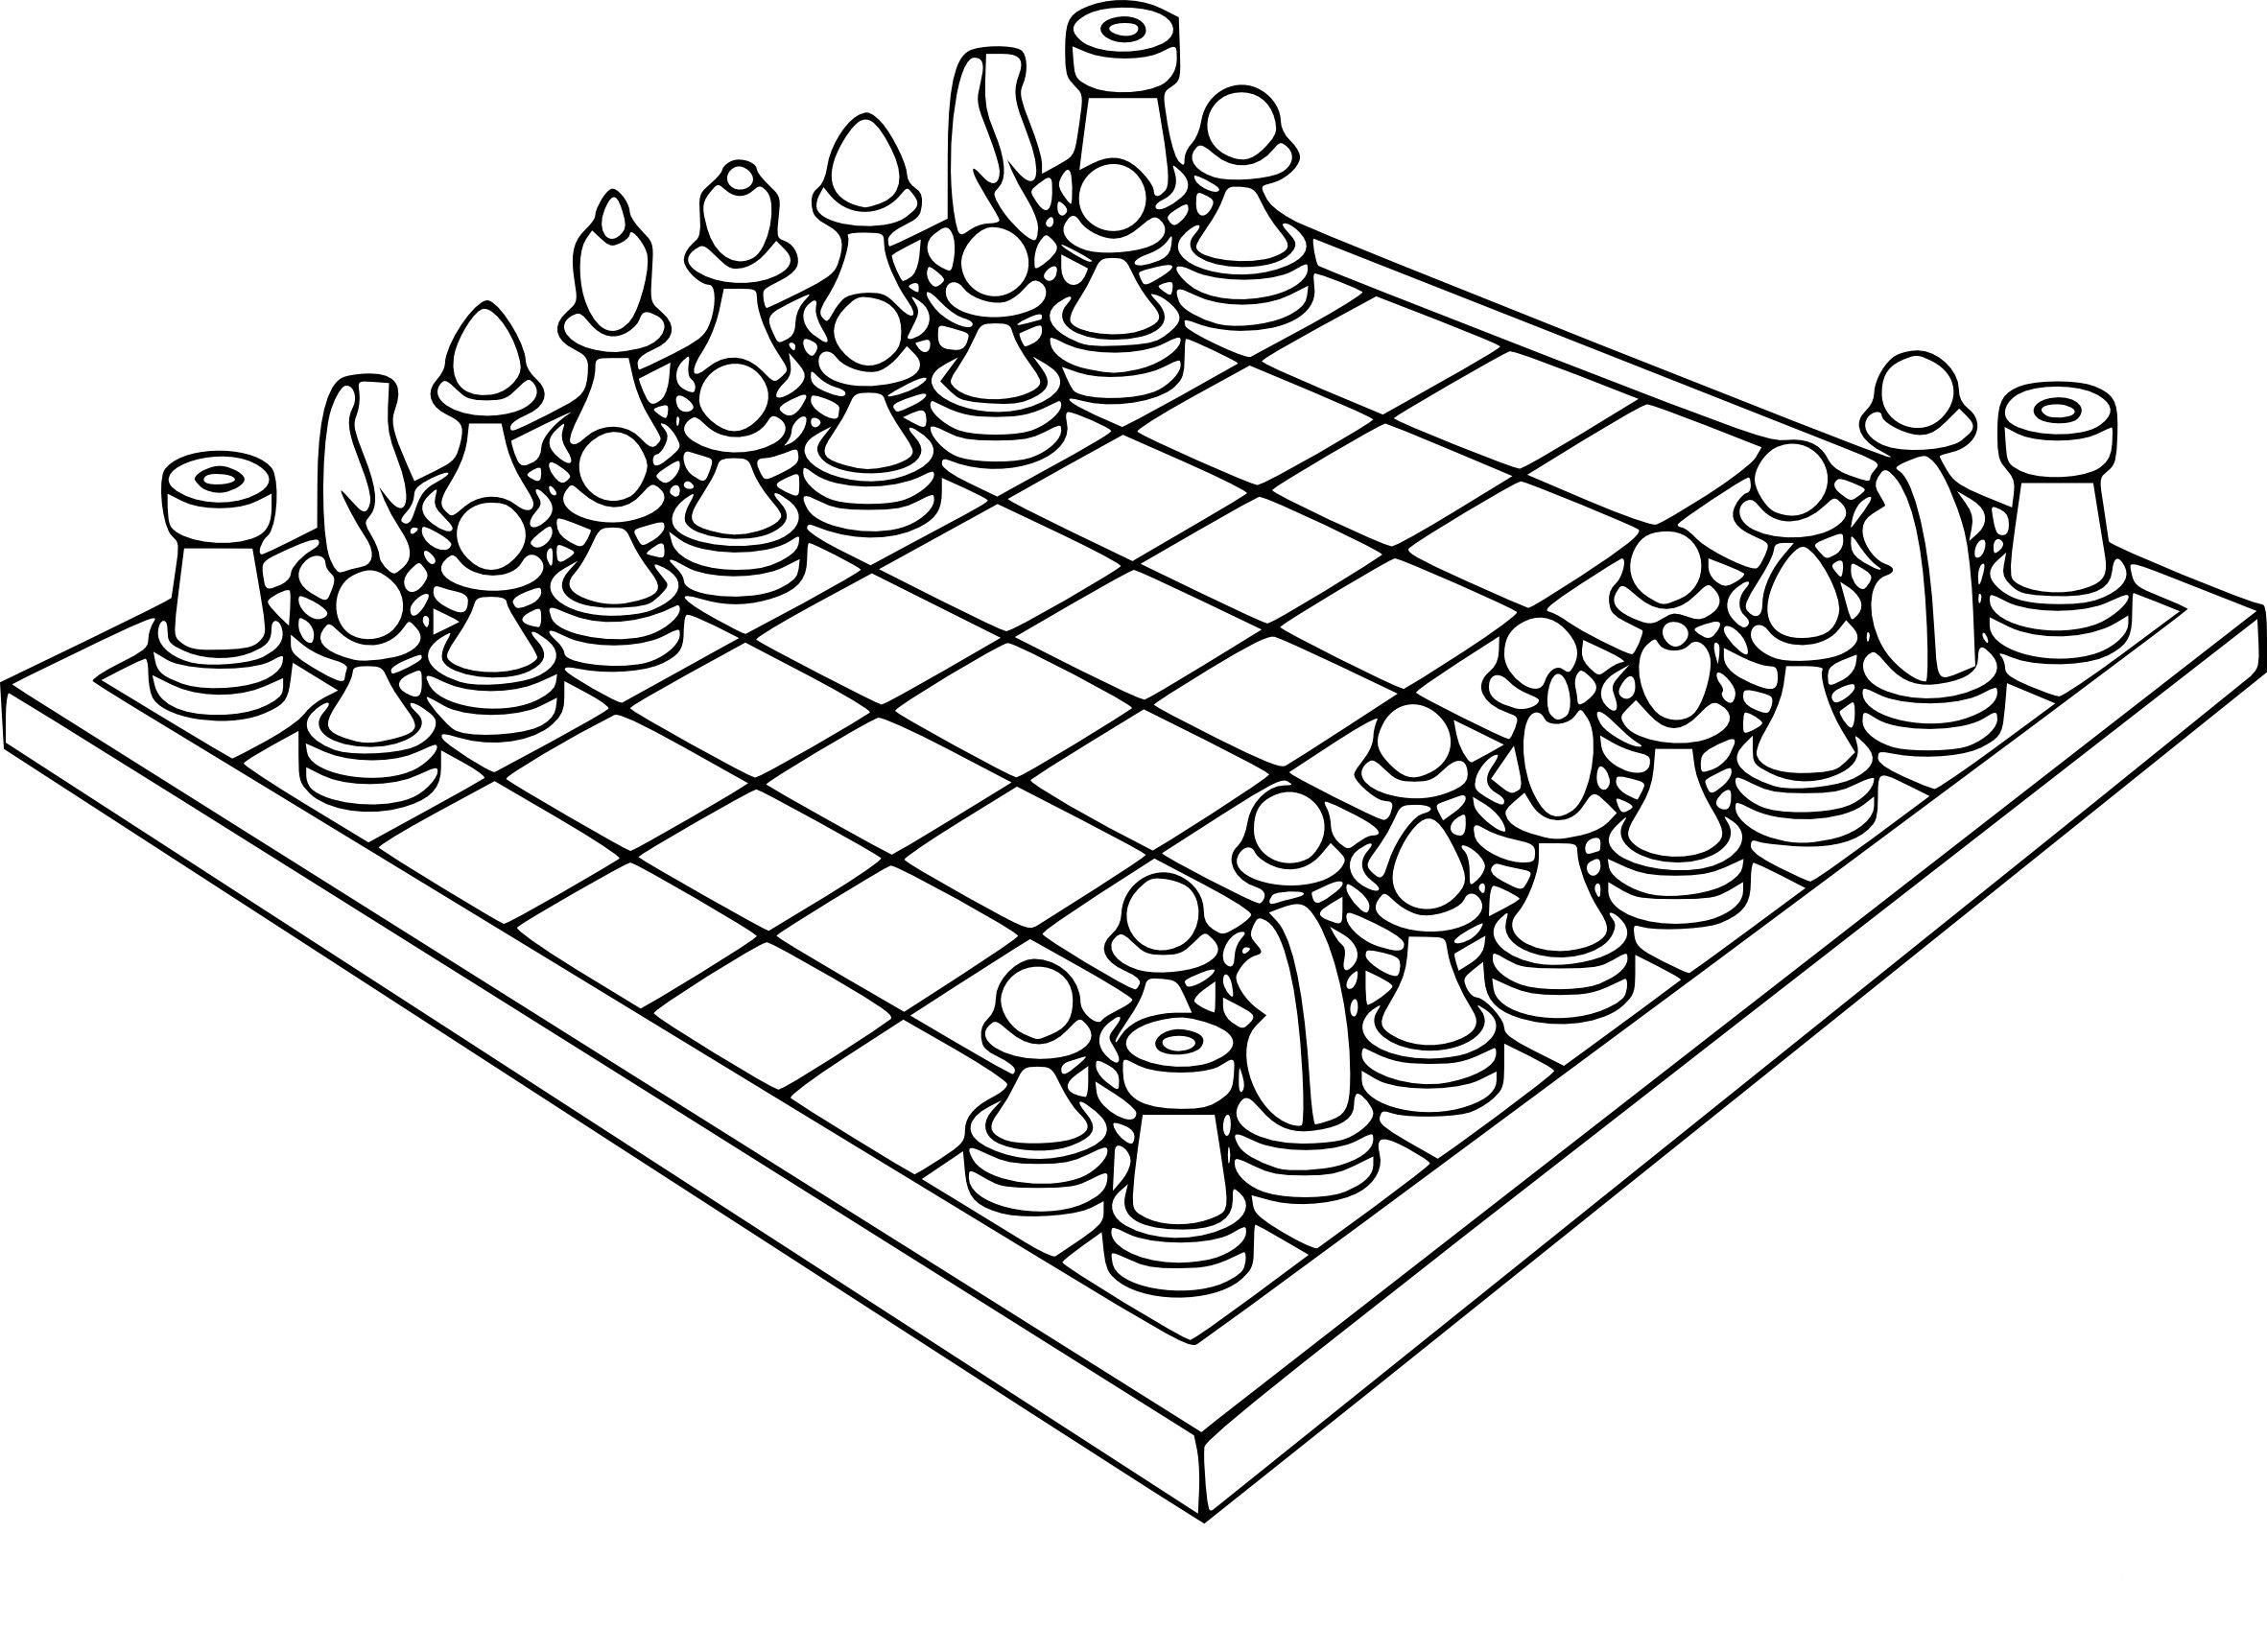 Kar-Karych joga xadrez livro de colorir, Smeshariki livro de colorir 